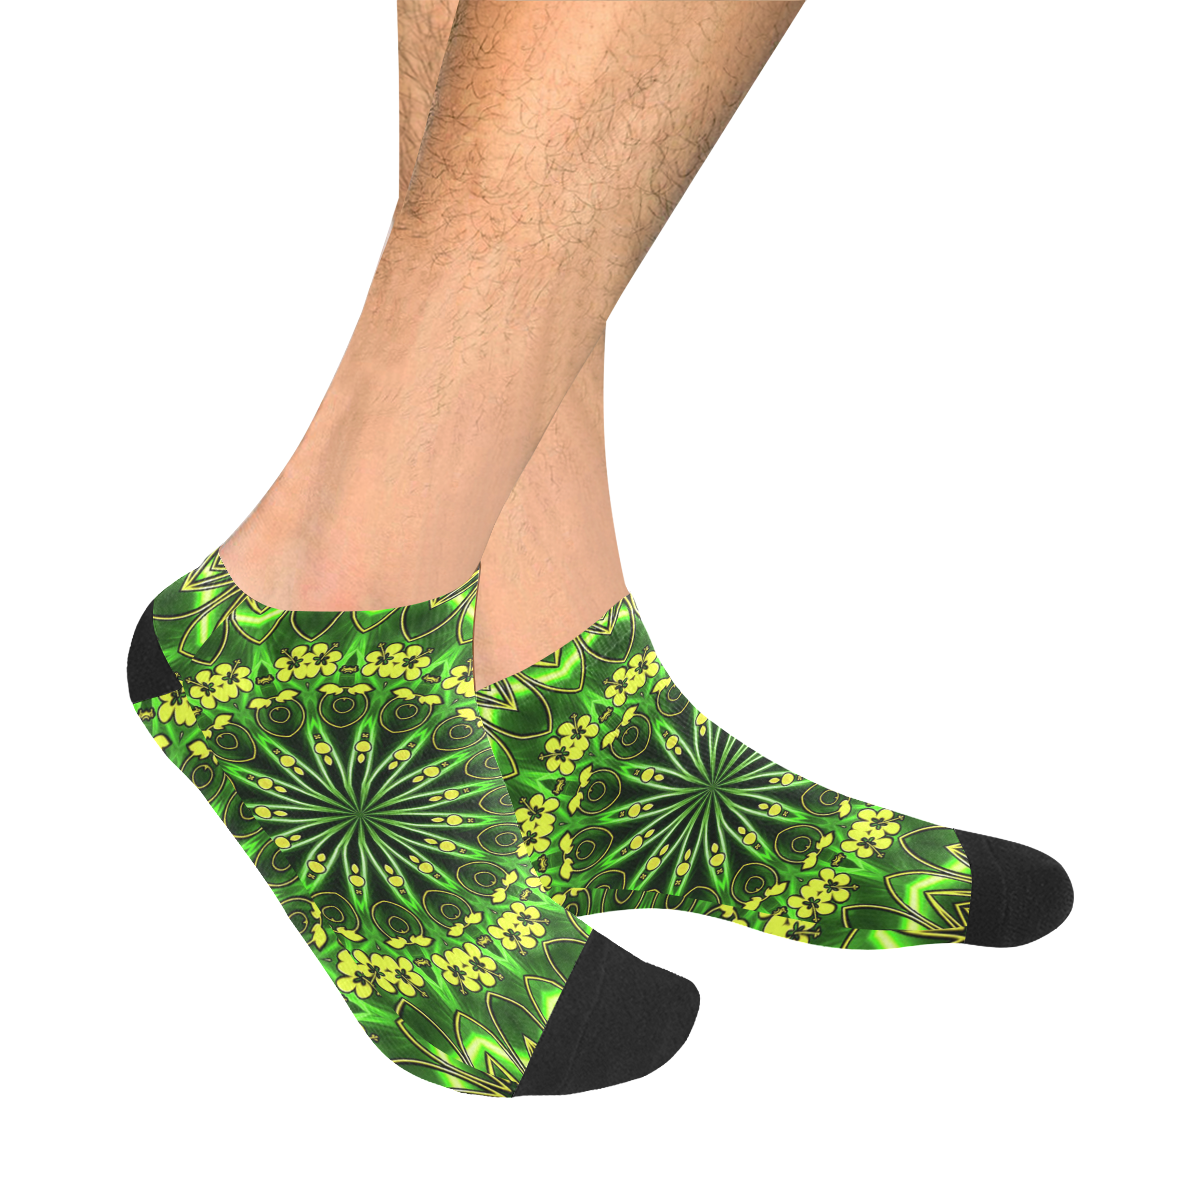 MANDALA GARDEN OF EDEN Men's Ankle Socks